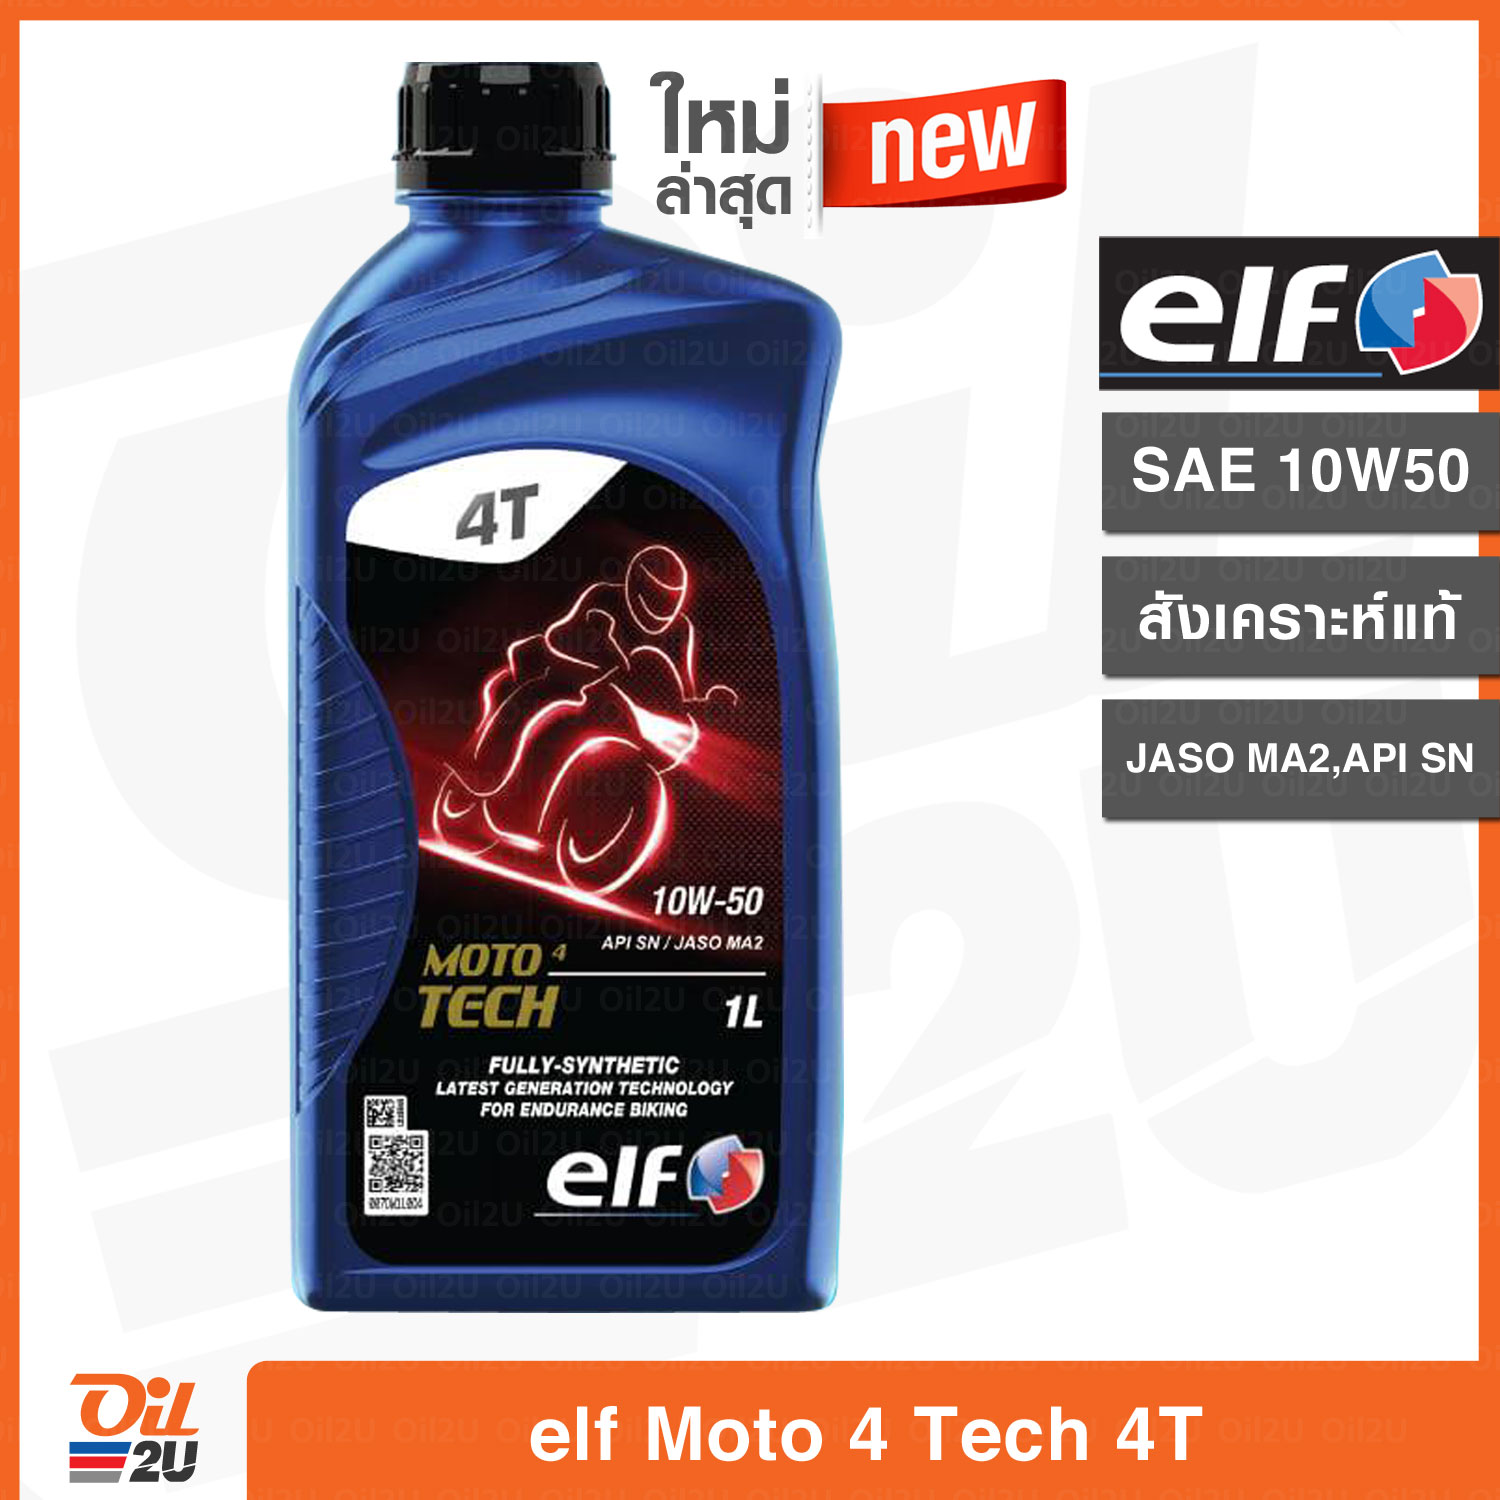 รุ่นใหม่ล่าสุด!! น้ำมันเครื่อง เอลฟ์ โมโต โฟร์ เทค elf Moto 4 Tech SAE 10W50 สังเคราะห์แท้ ปริมาณ 1 ลิตร | Oil2U